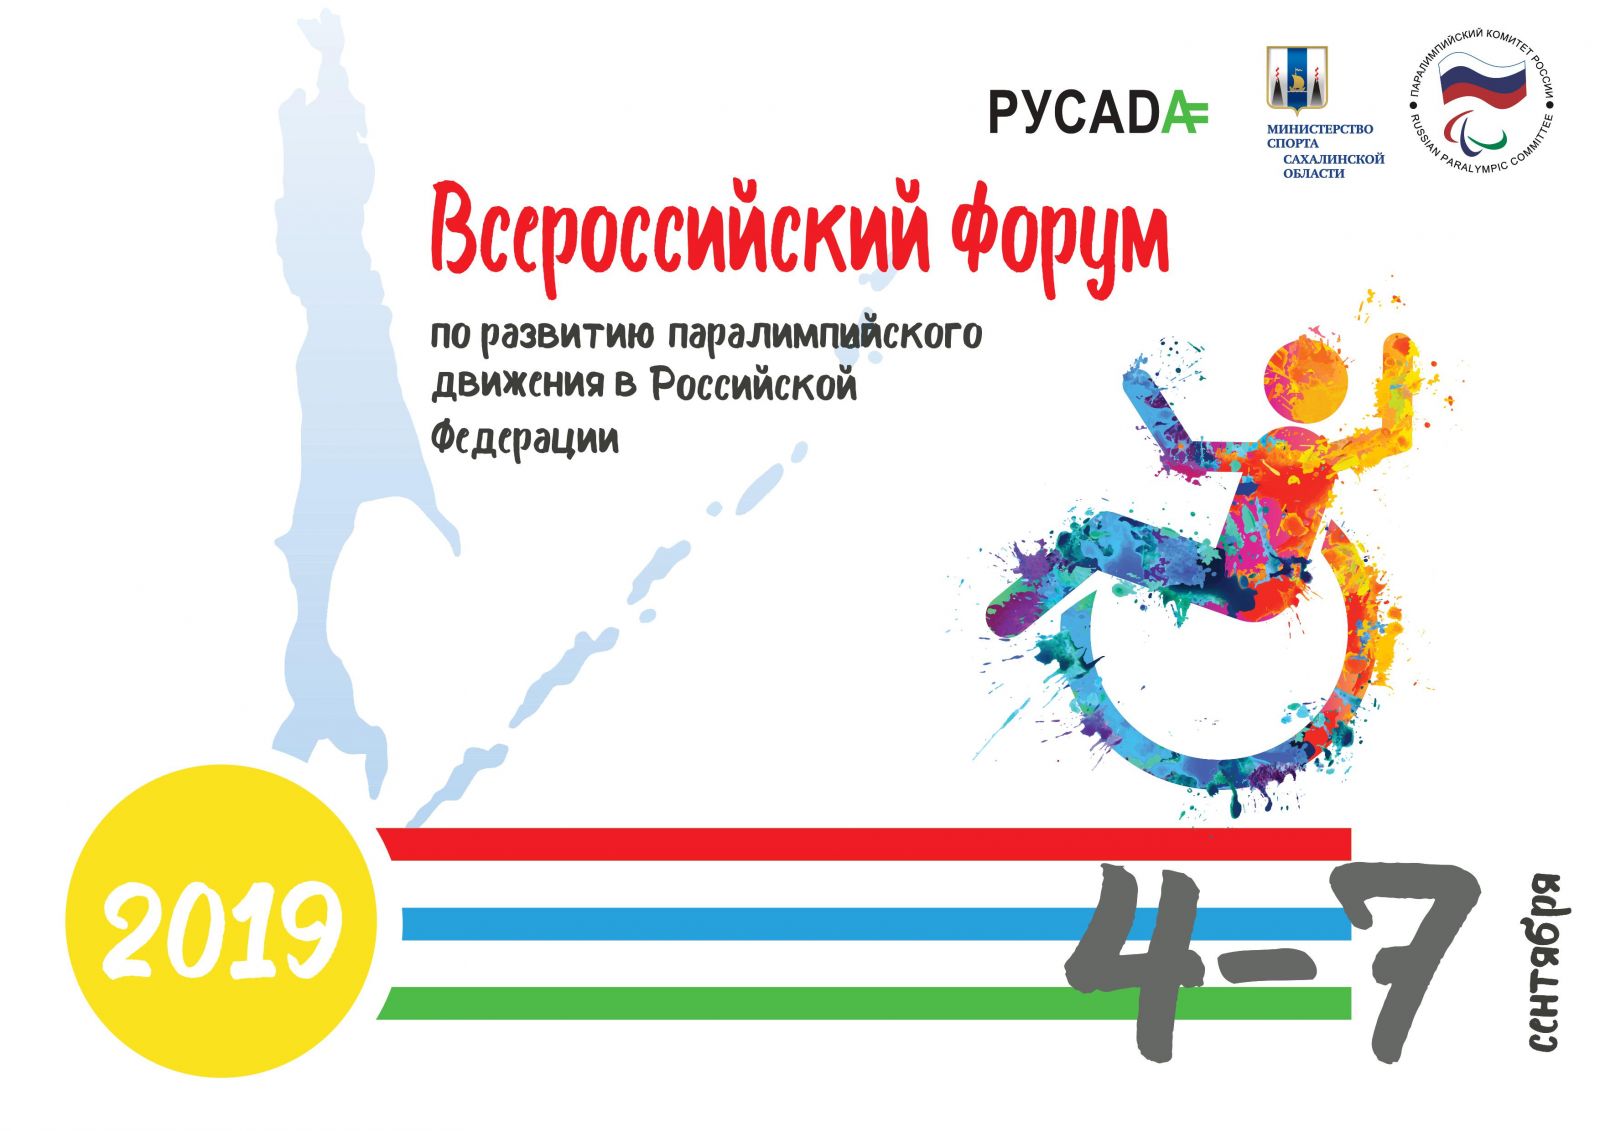 4-7 сентября 2019 года в г. Южно-Сахалинск ПКР, Минспорт Сахалинской области совместно с РАА «РУСАДА» проведут Всероссийский форум по развитию паралимпийского движения в Российской Федерации